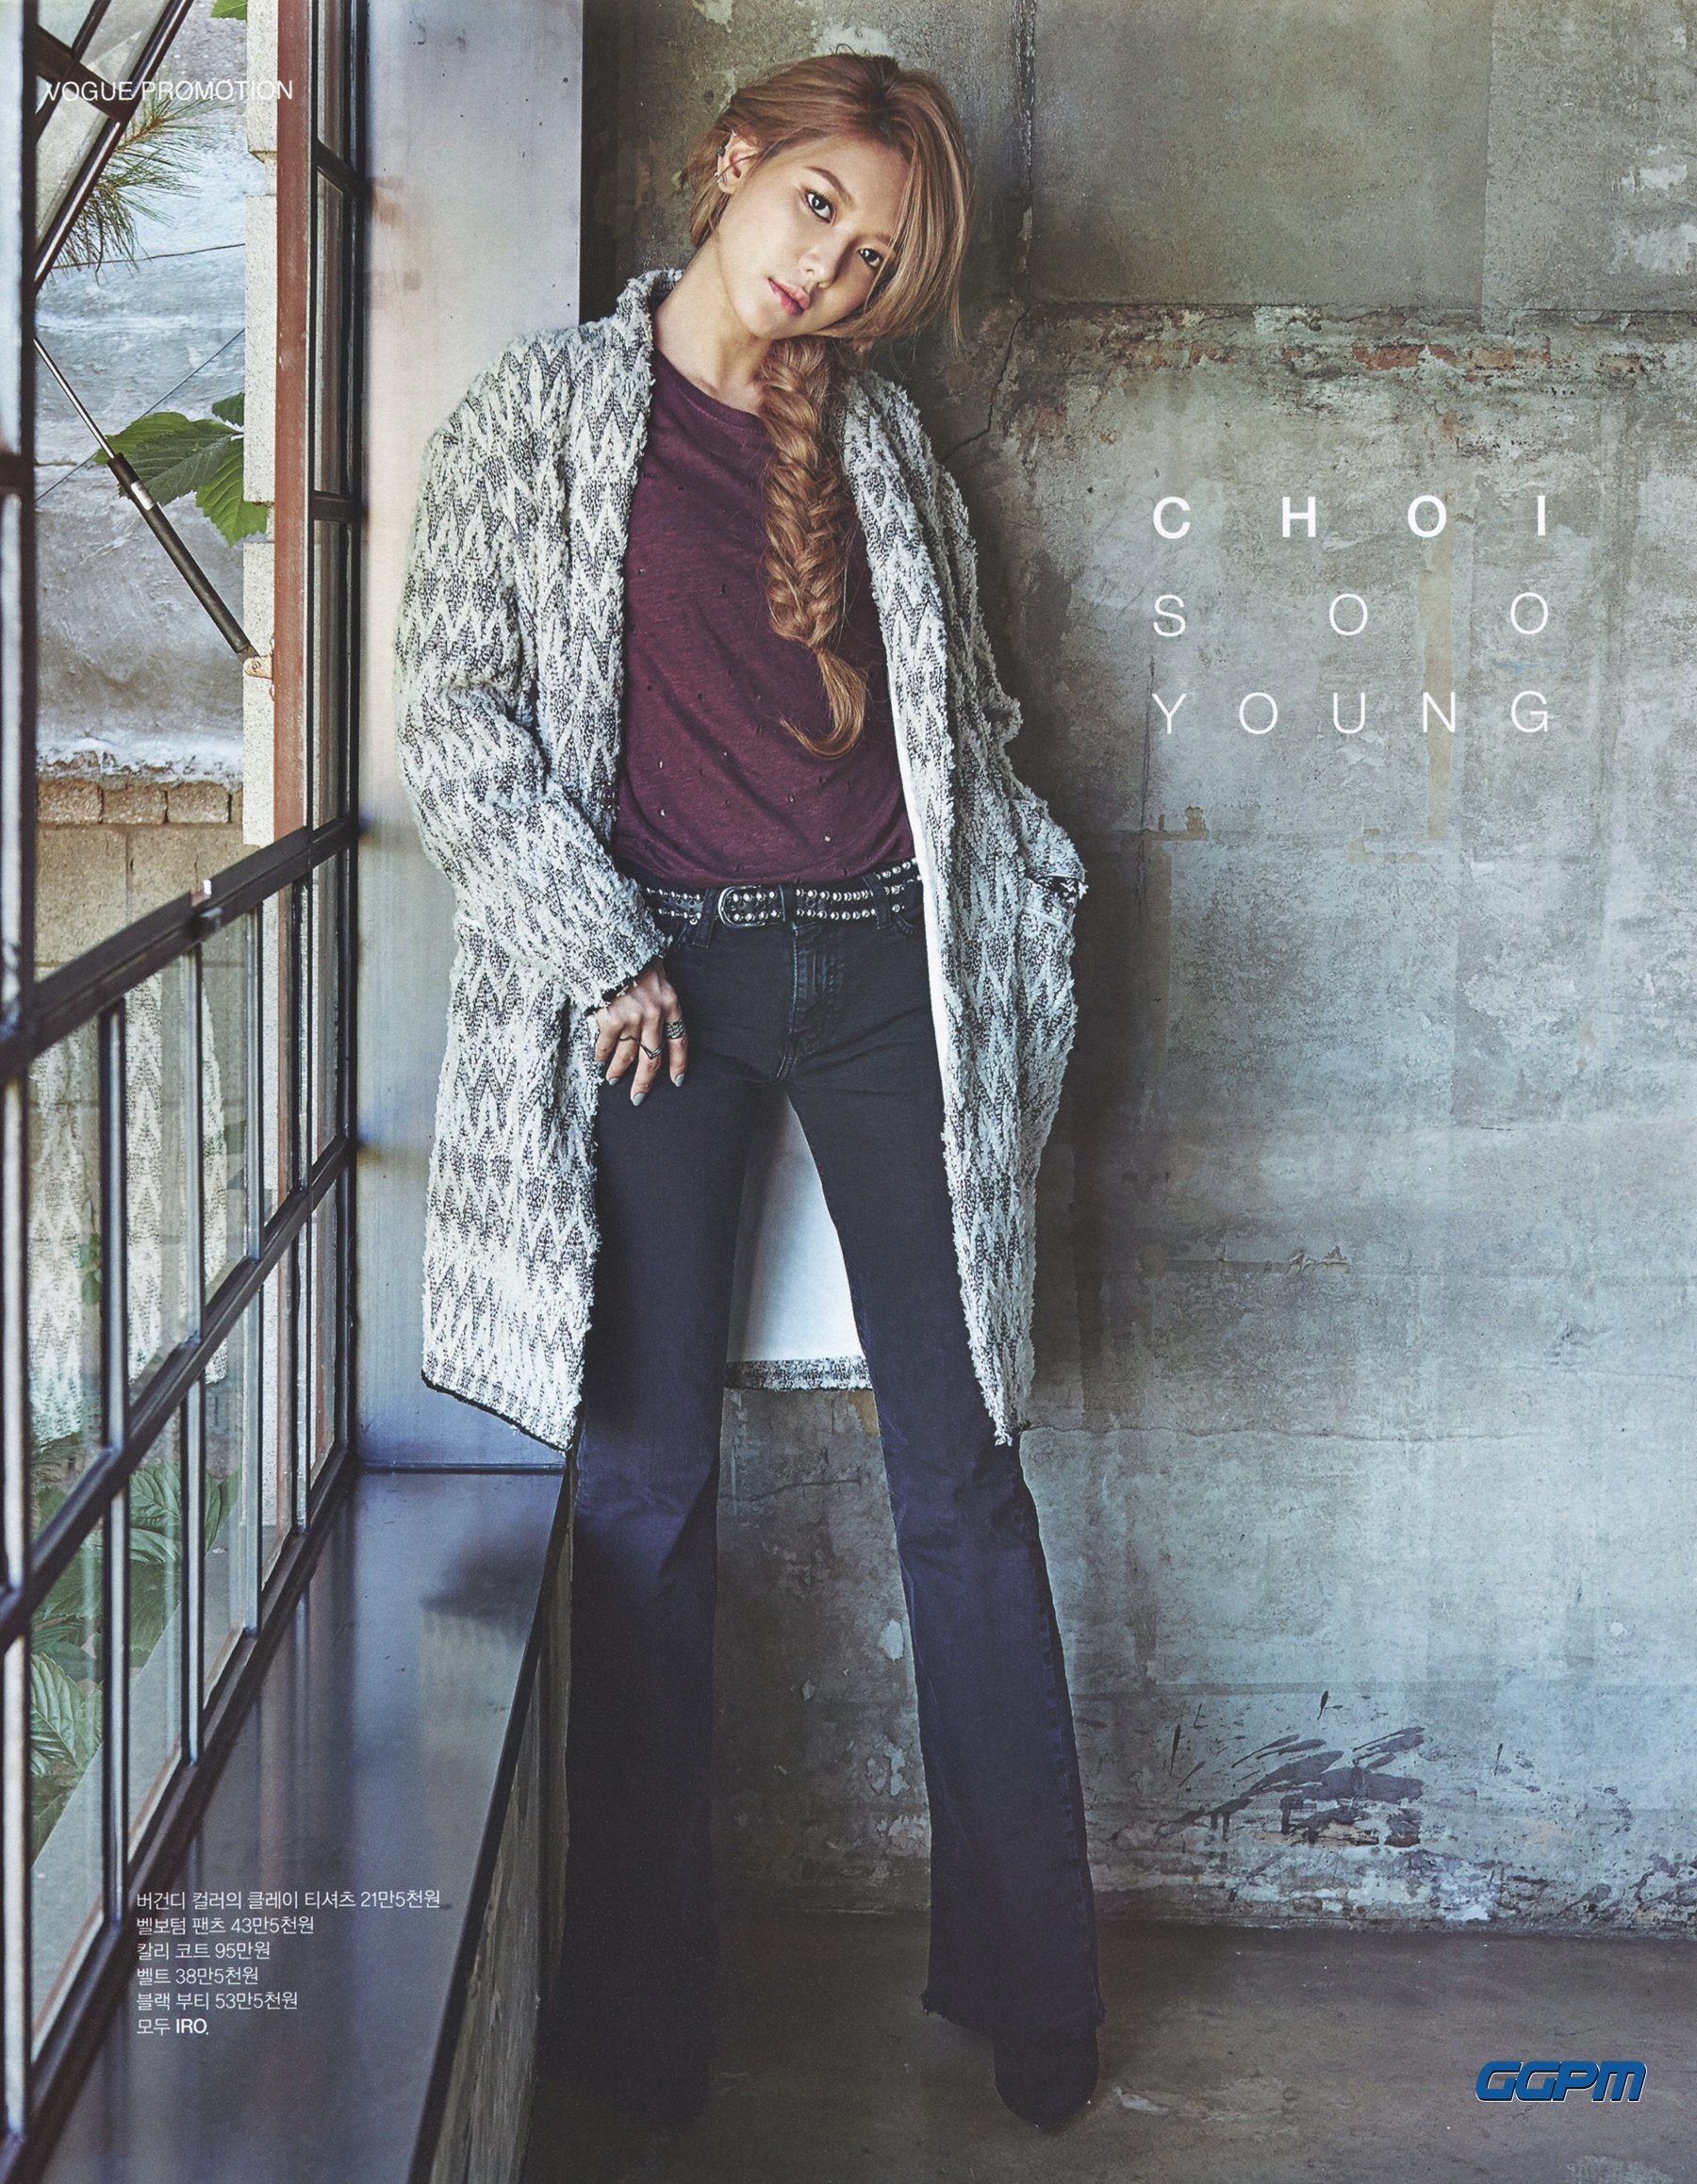 [PIC][09-09-2015]SooYoung xuất hiện trên ấn phẩm tháng 10 của tạp chí "VOGUE" Fty4Huznon-3000x3000